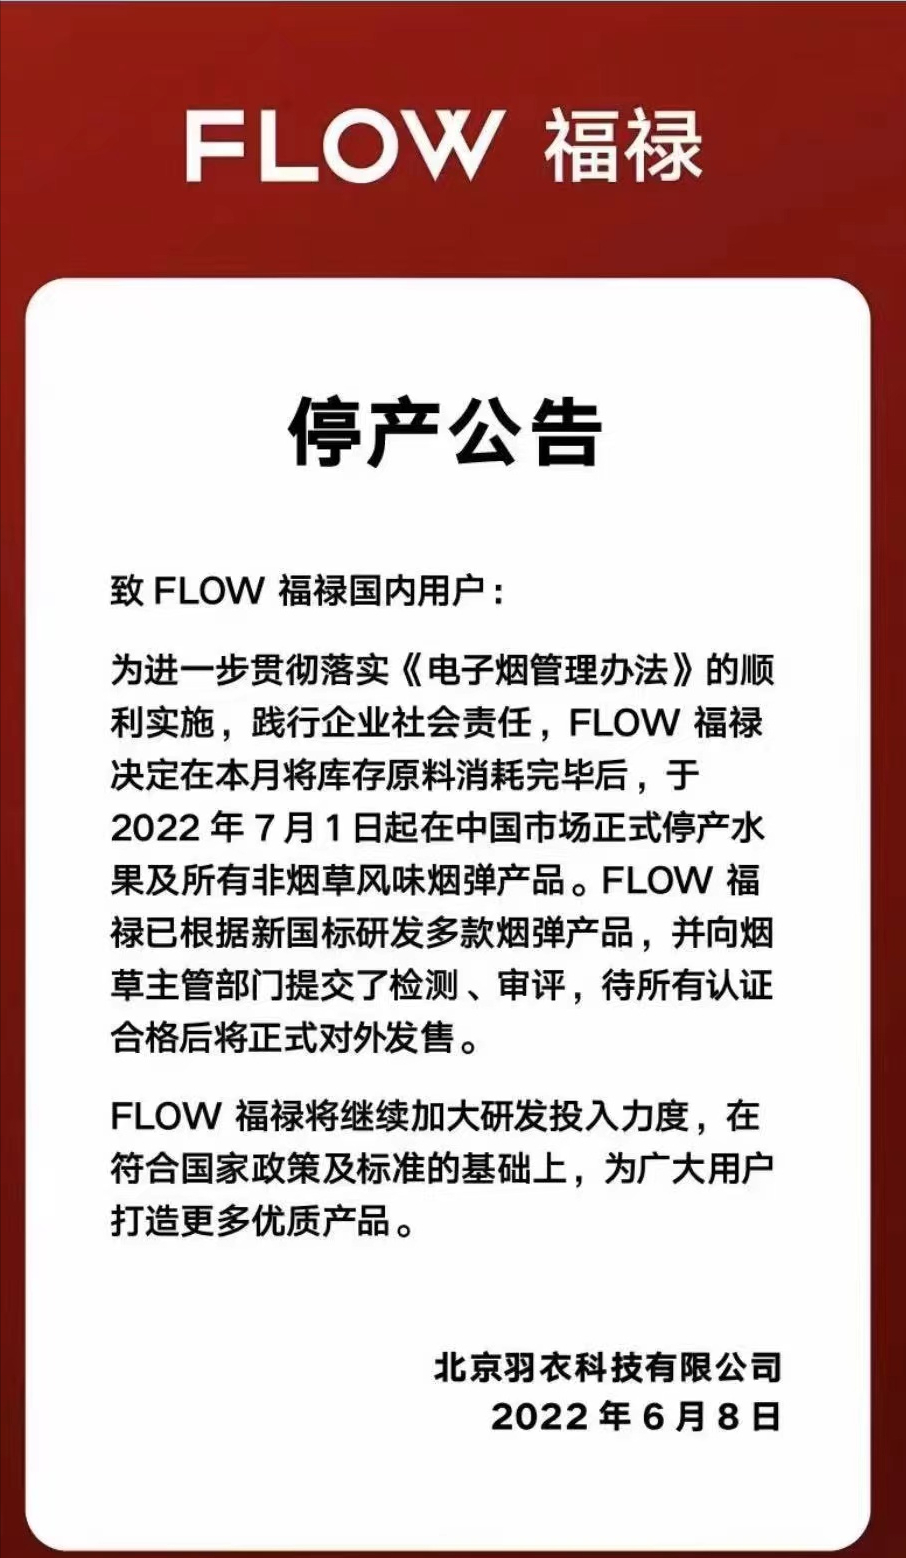 FLOW福禄：7月1日起在中国市场停产水果及所有非烟草风味烟弹产品